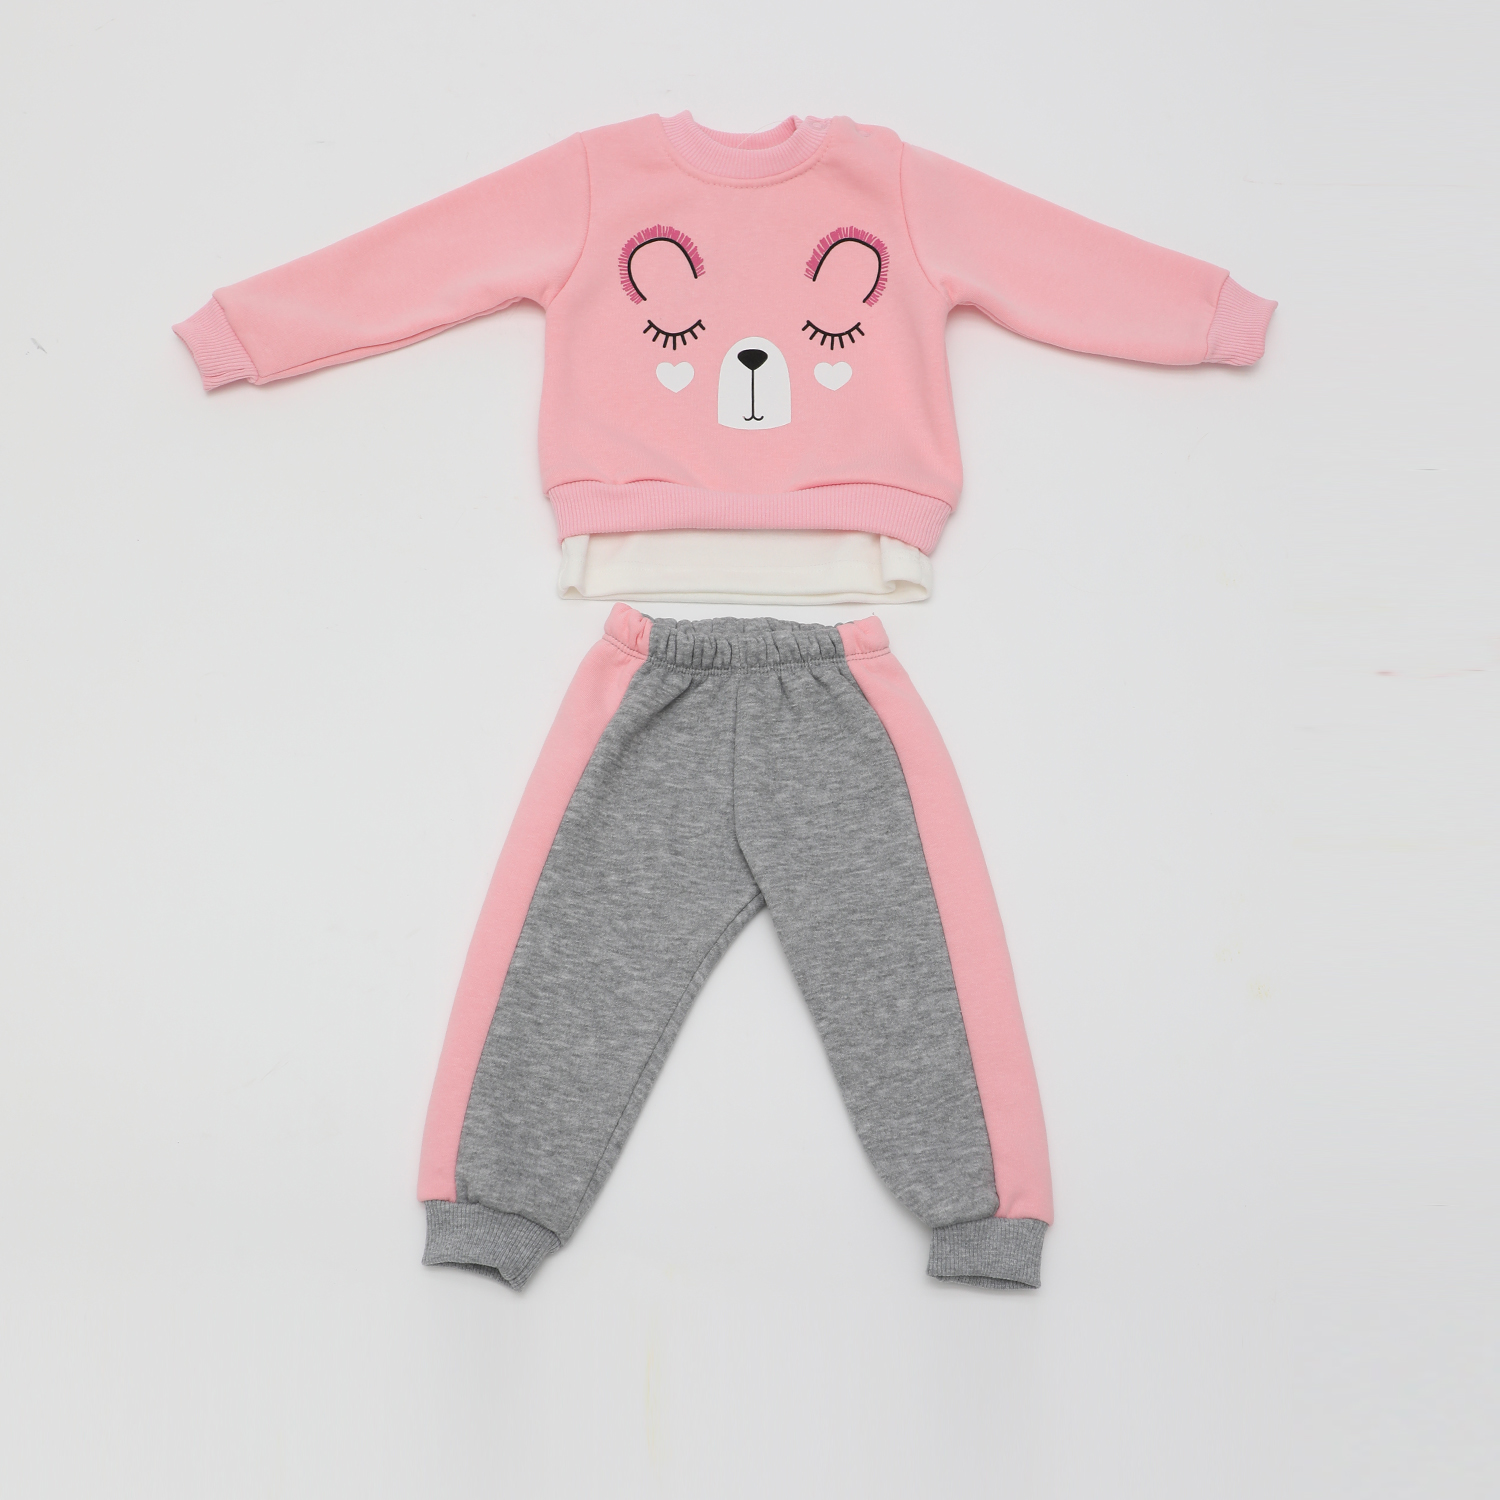 Παιδικά/Baby/Ρούχα/Σετ SAM 0-13 - Βρεφικό σετ φόρμας SAM 0-13 ροζ γκρι